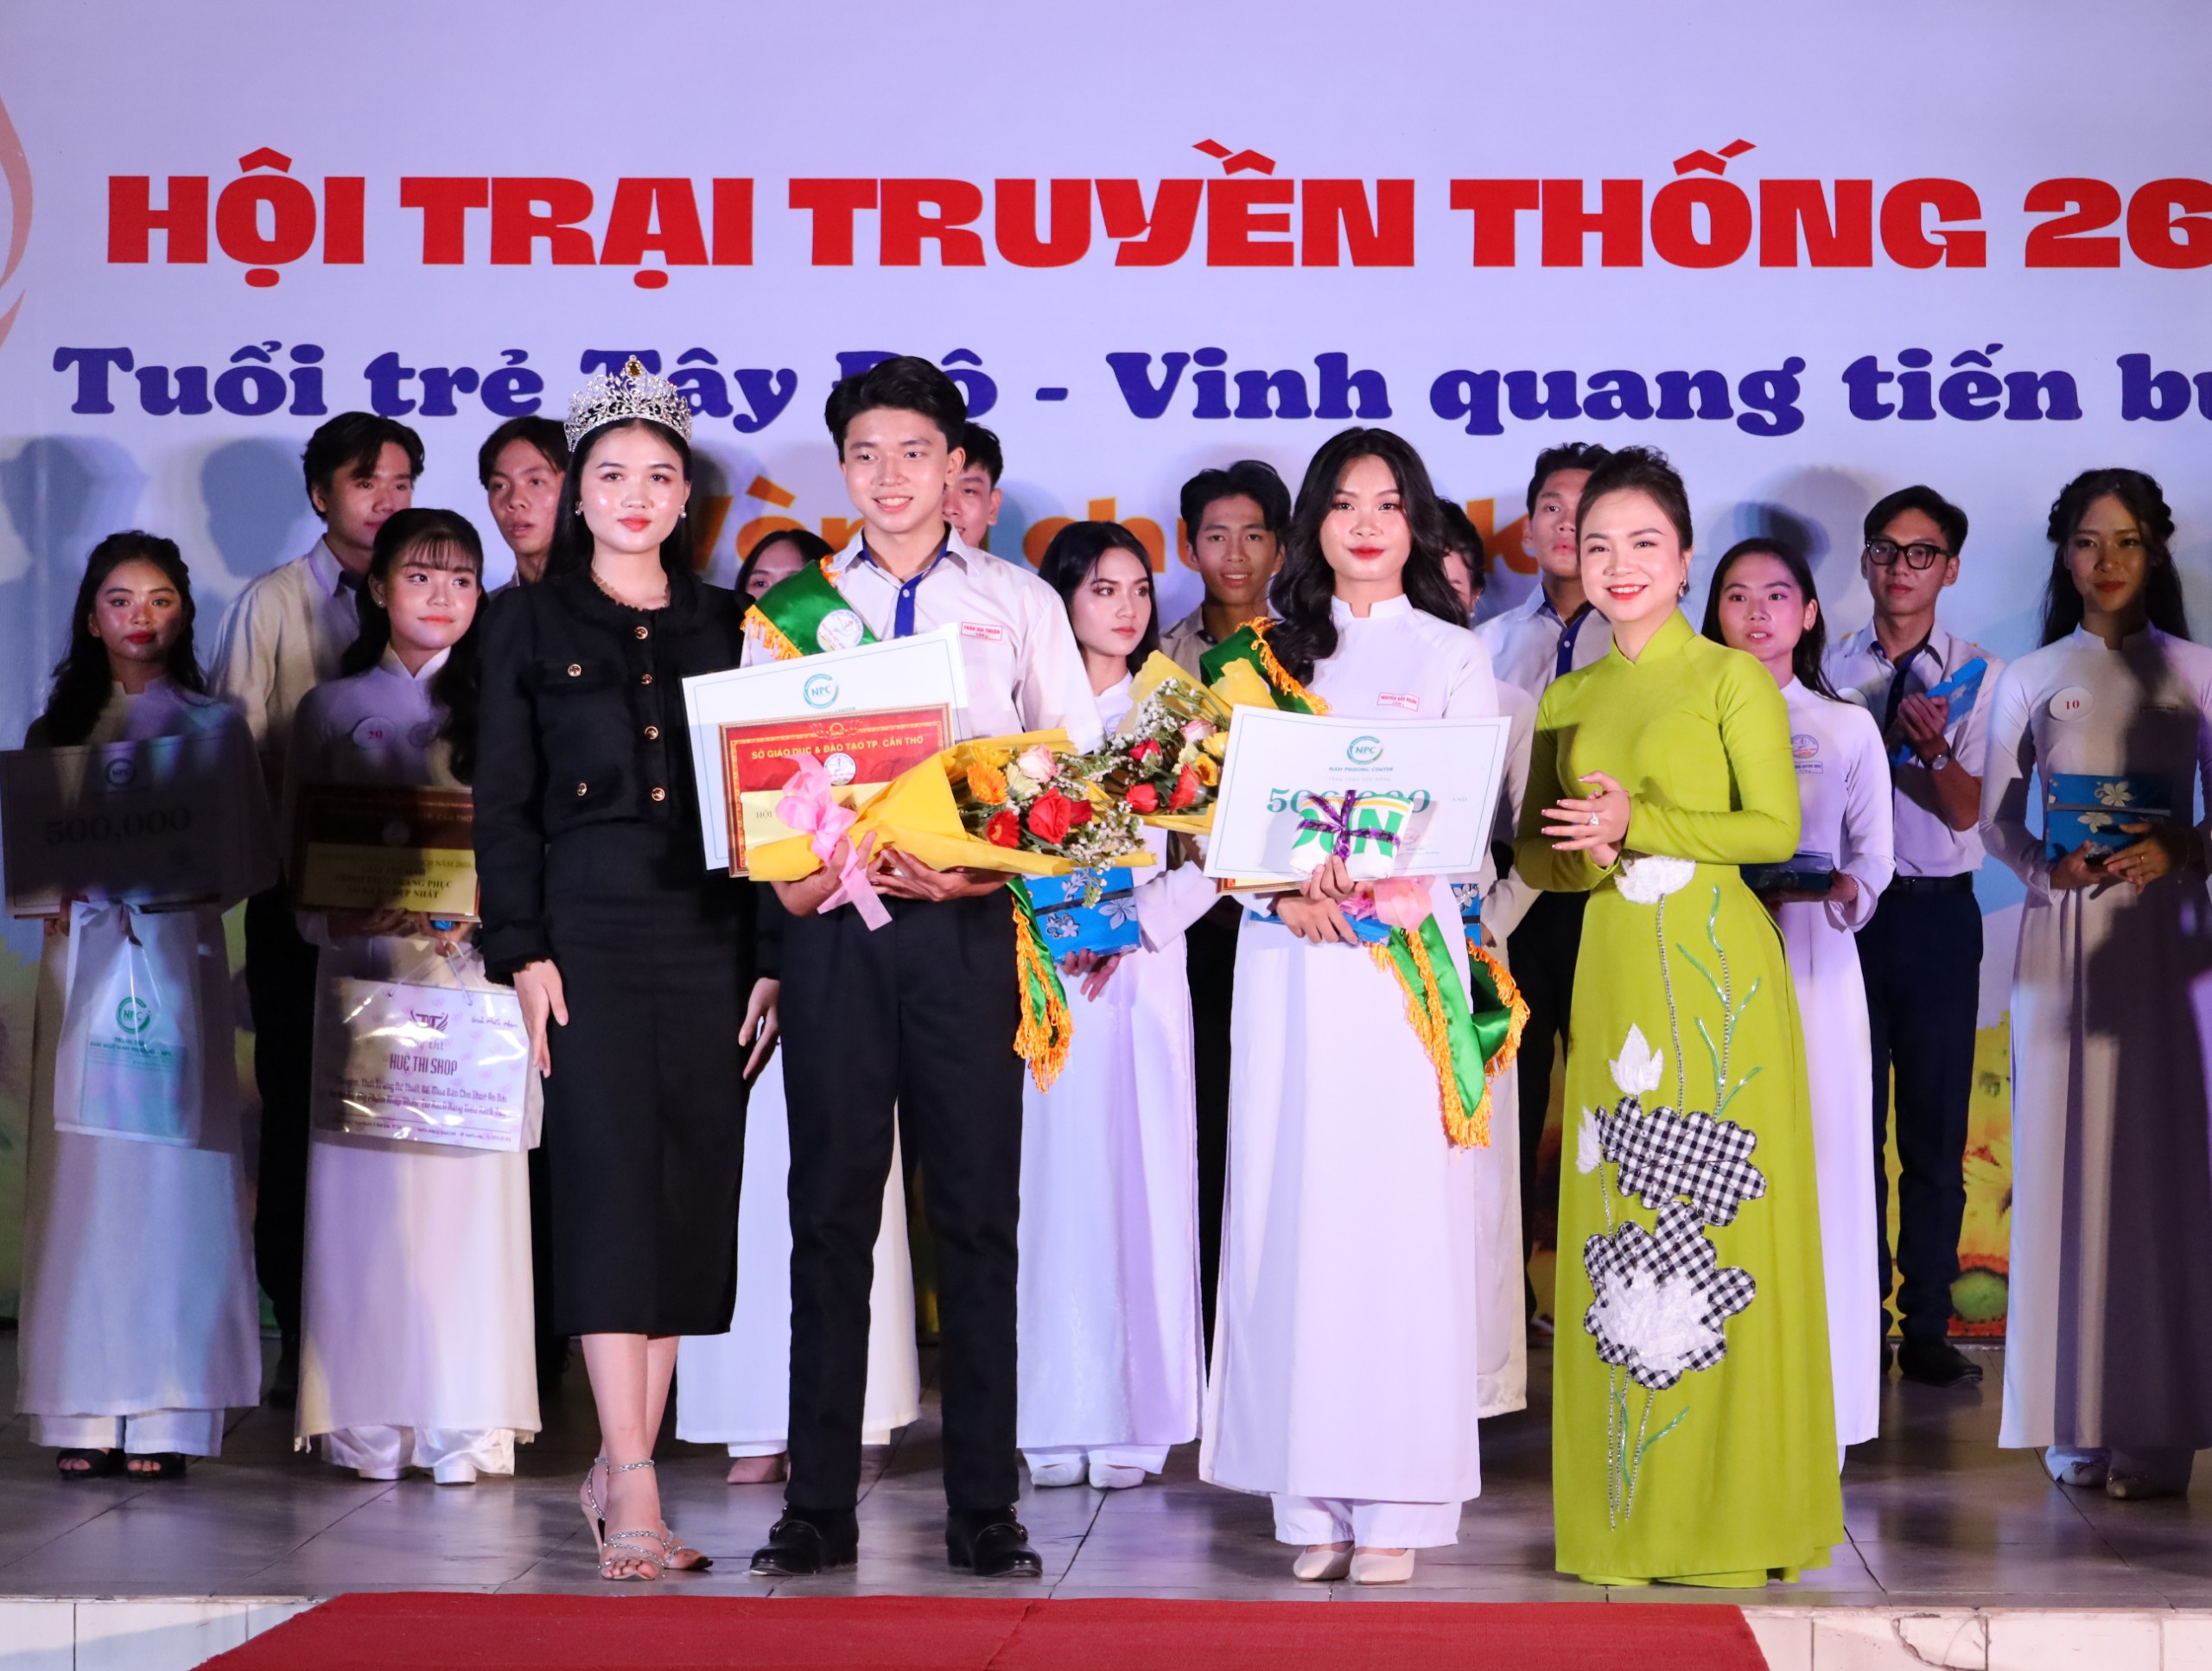 Ban tổ chức trao giải cho Á khôi 2 - Nguyễn Bảo Ngân và Á vương 2 - Trần Gia Thuận.